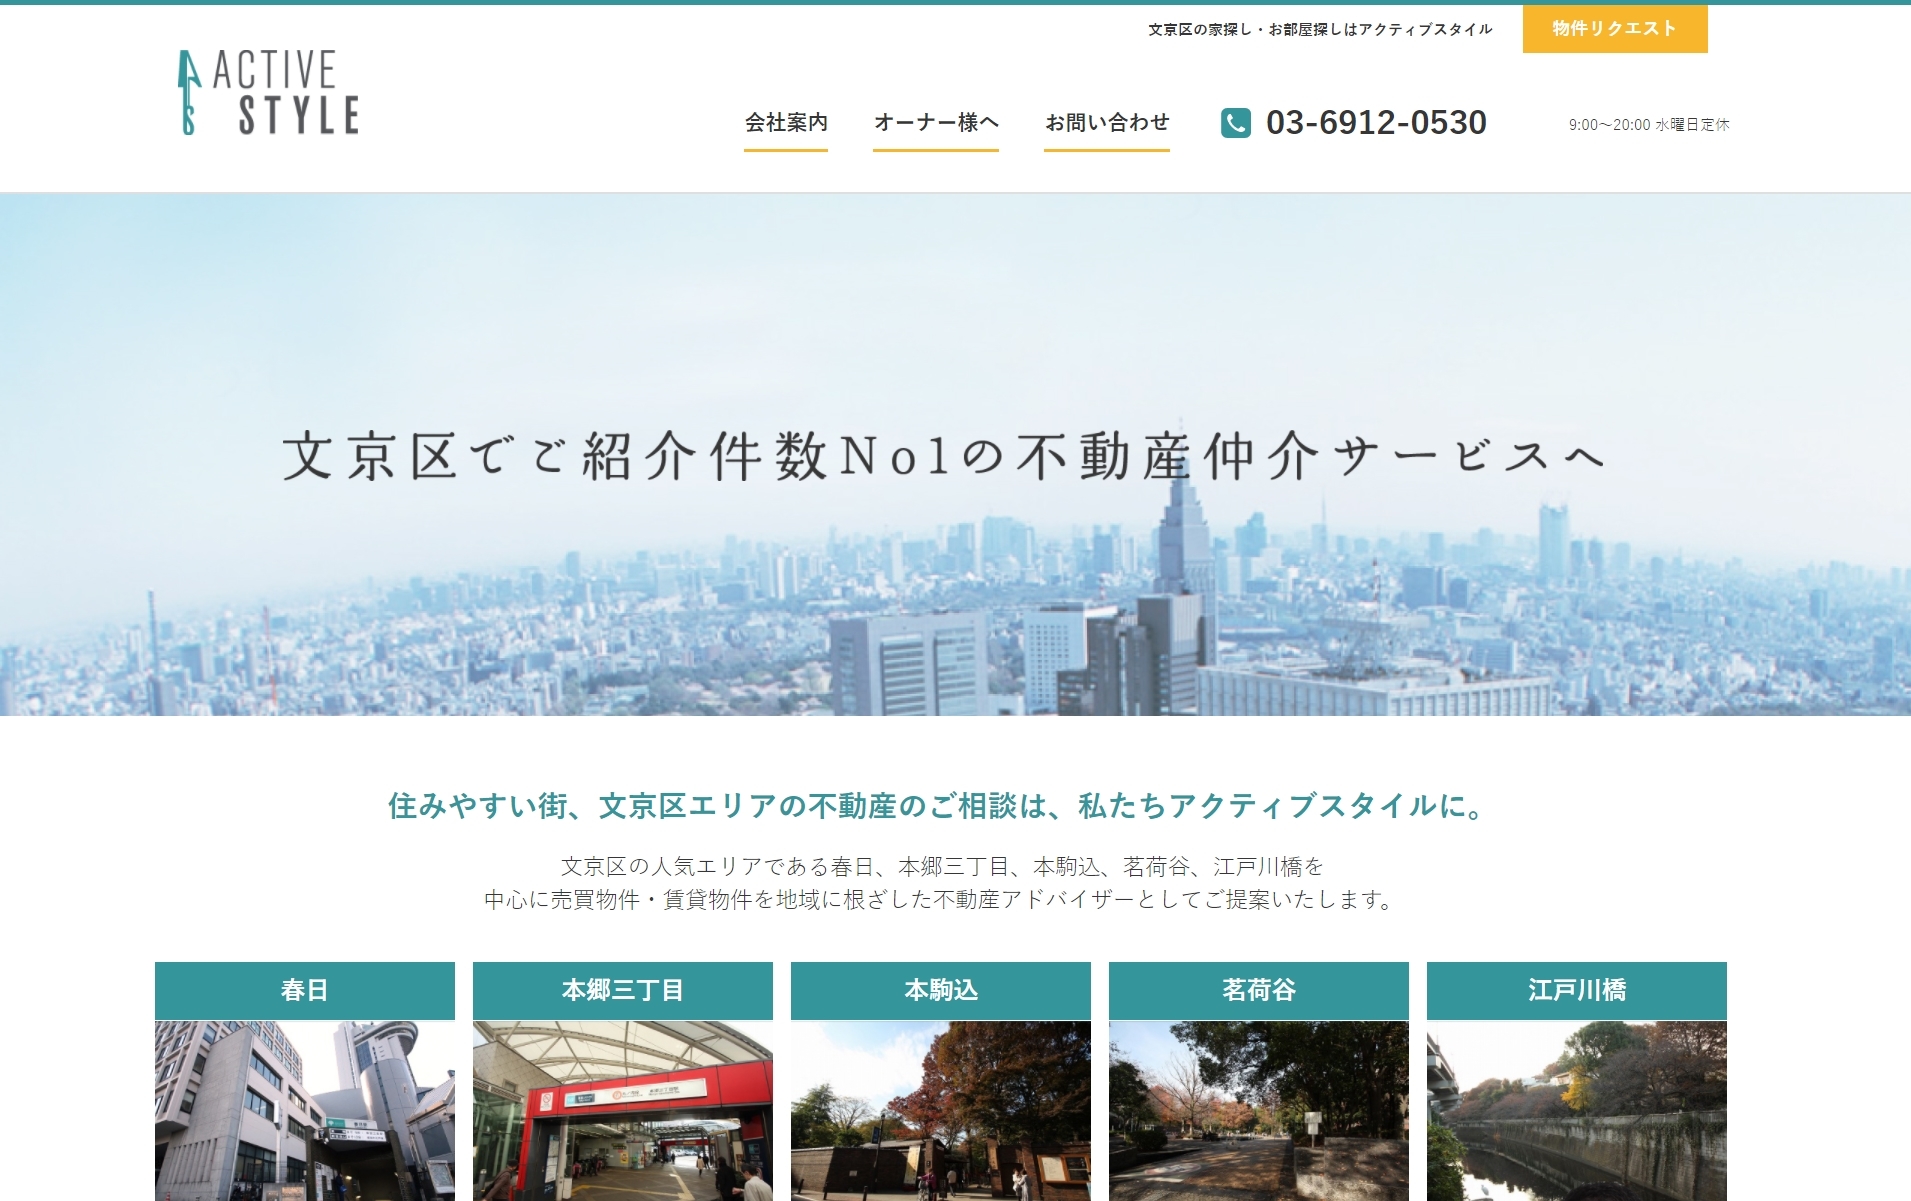 文京区の不動産会社アクティブスタイル様のホームページをレスポンシブPlanで制作